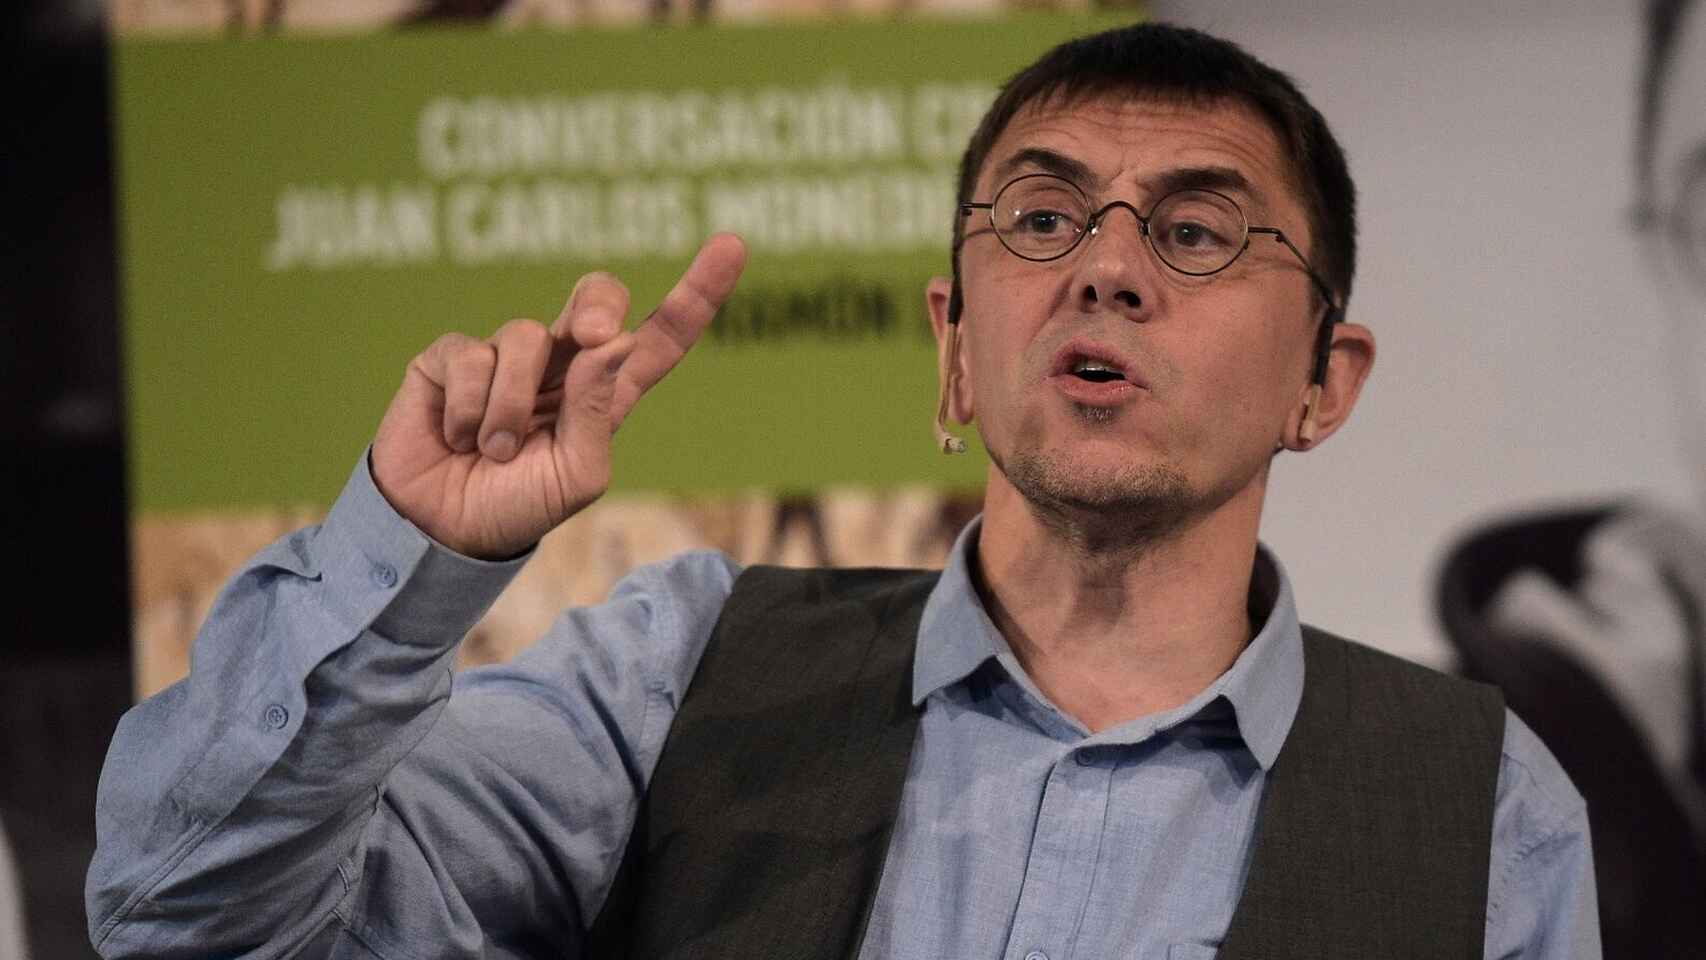 Tremendo zasca de Juan Caros Girauta a Juan Carlos Monedero por atacar a la UE: Cuéntanos qué tiene Podemos...